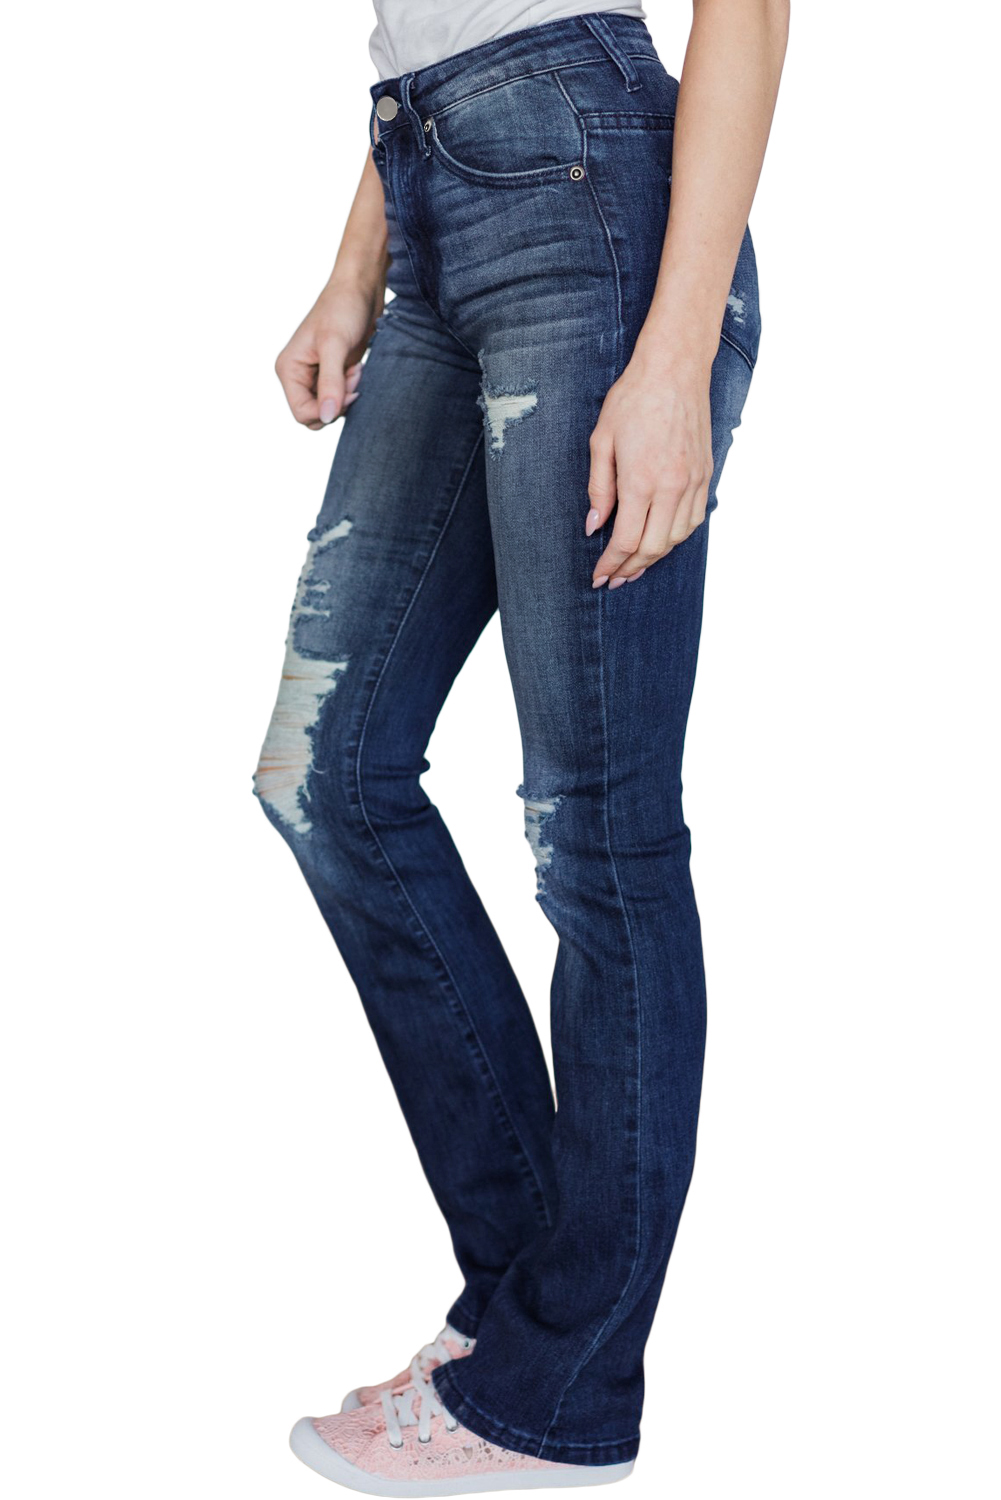 jeans wholesale